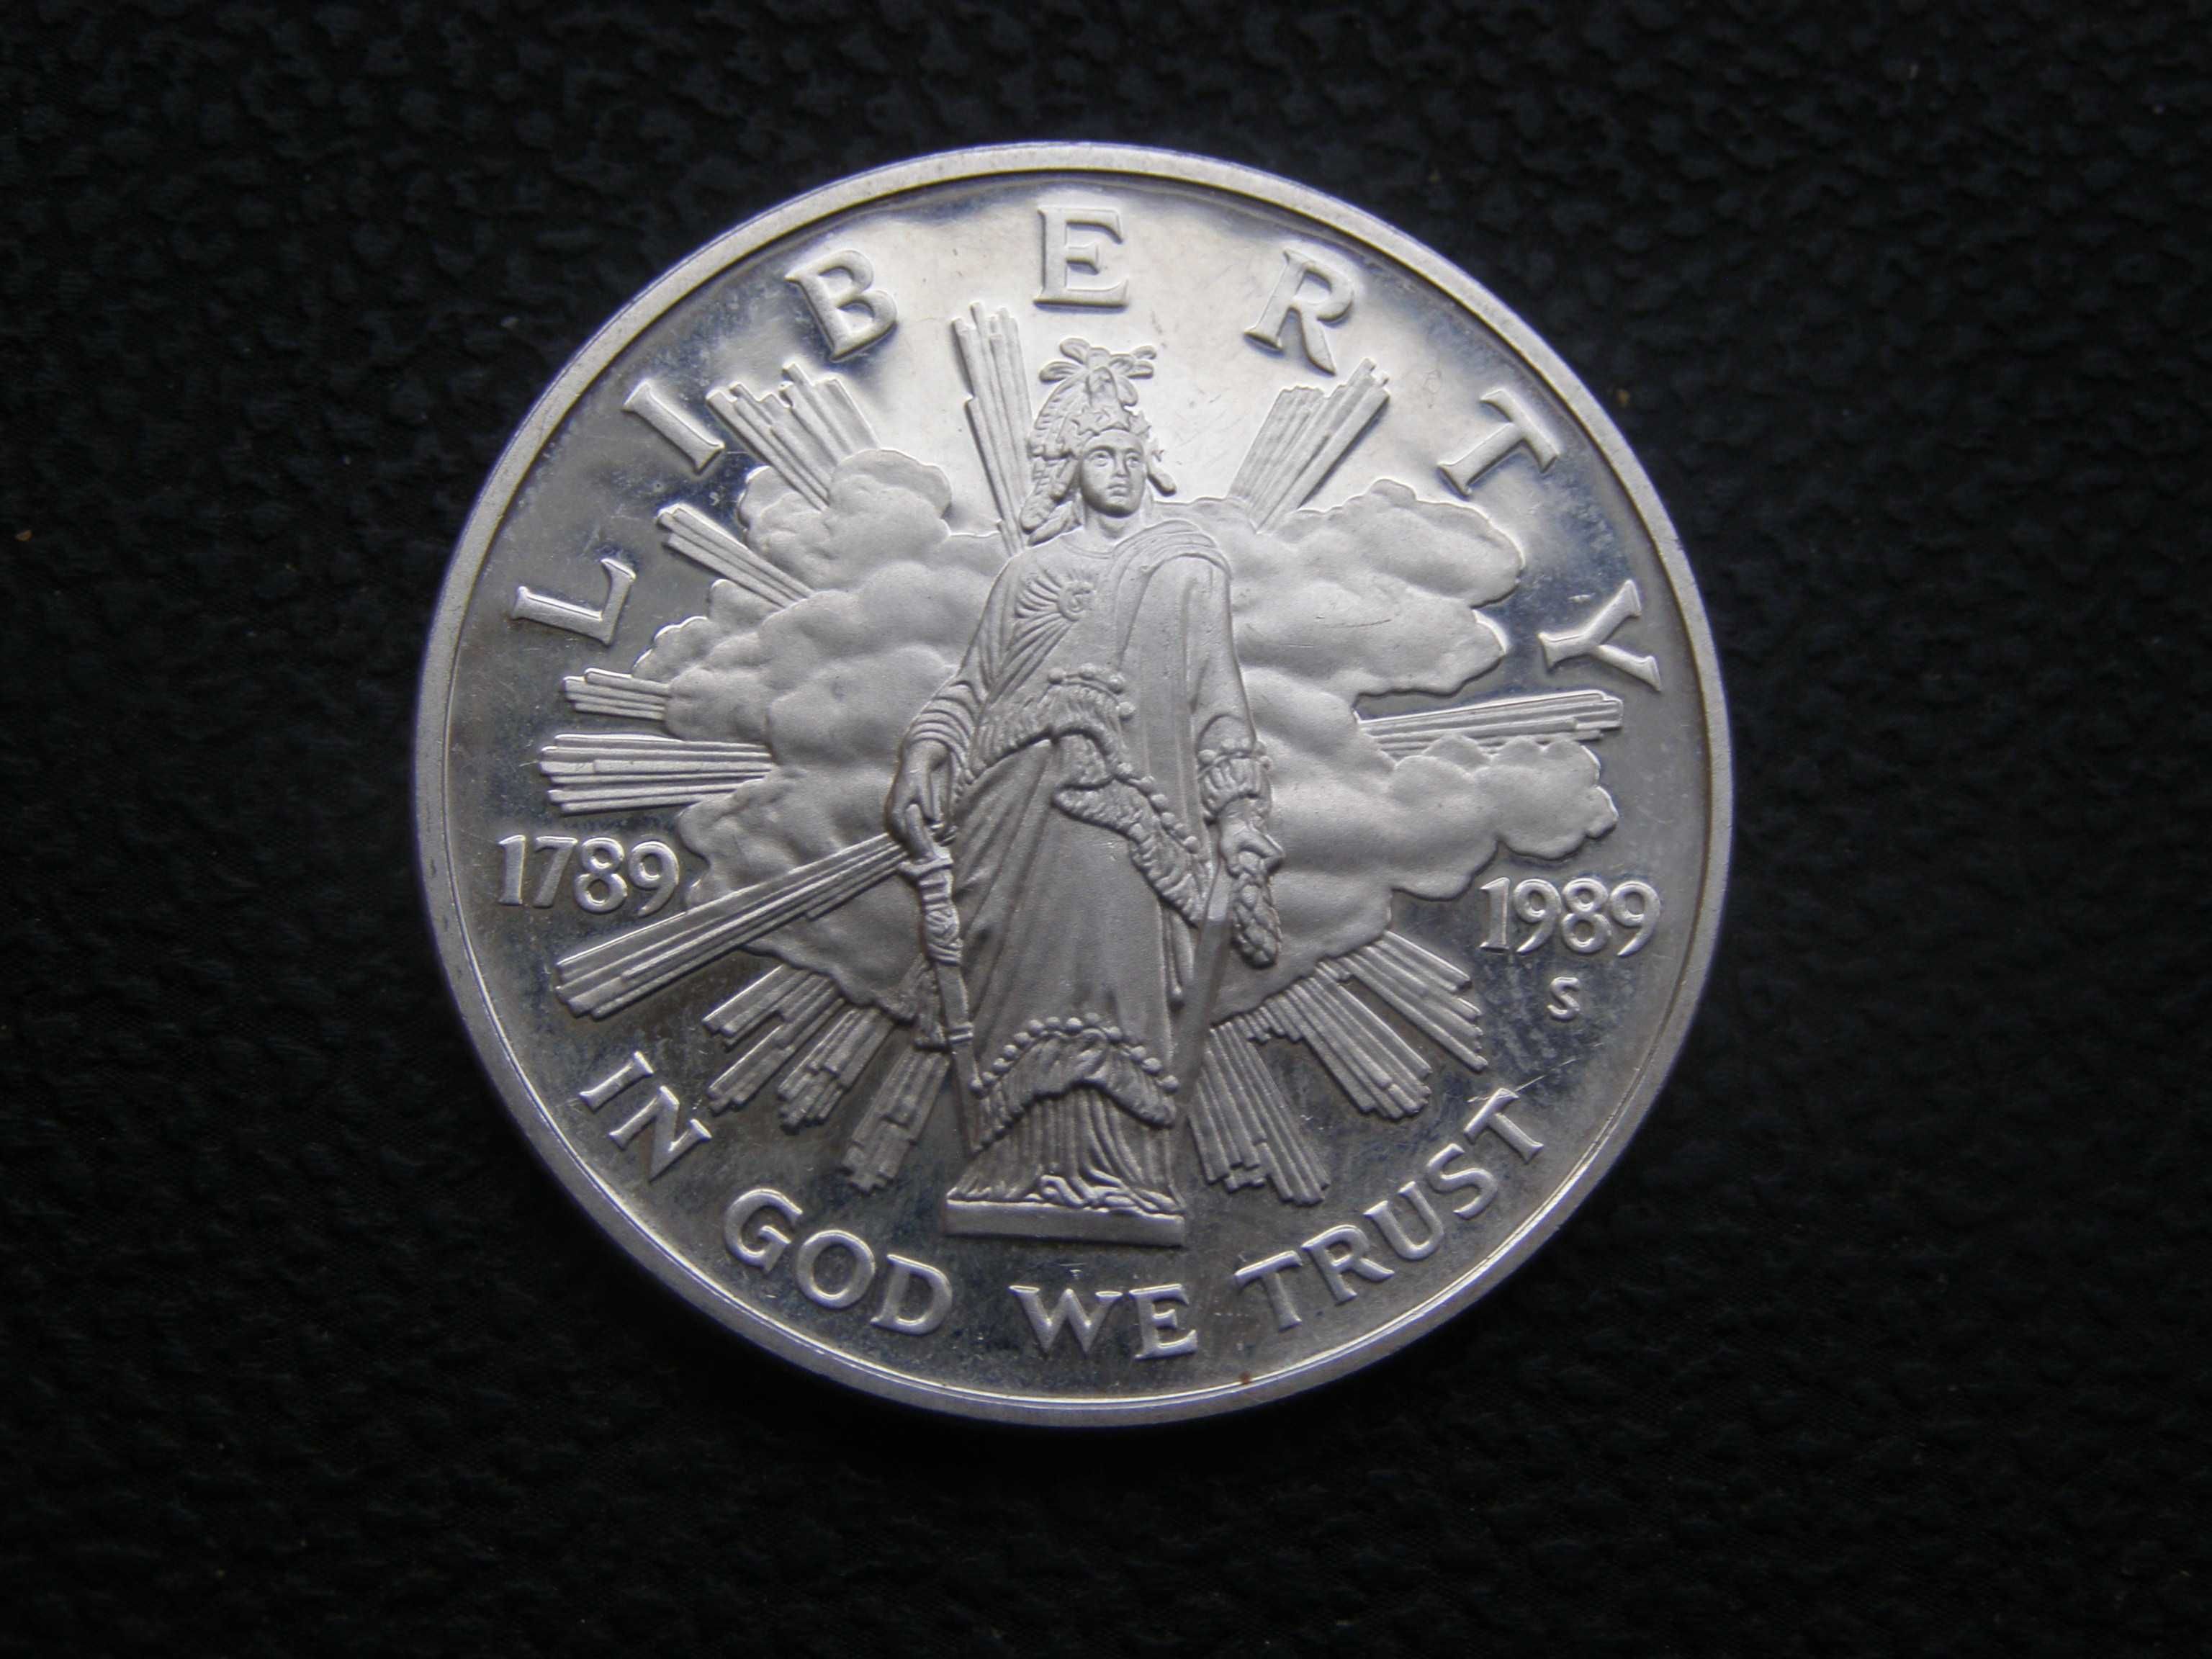 1 доллар США 1989 г. 200 лет Конгресса. Серебро.